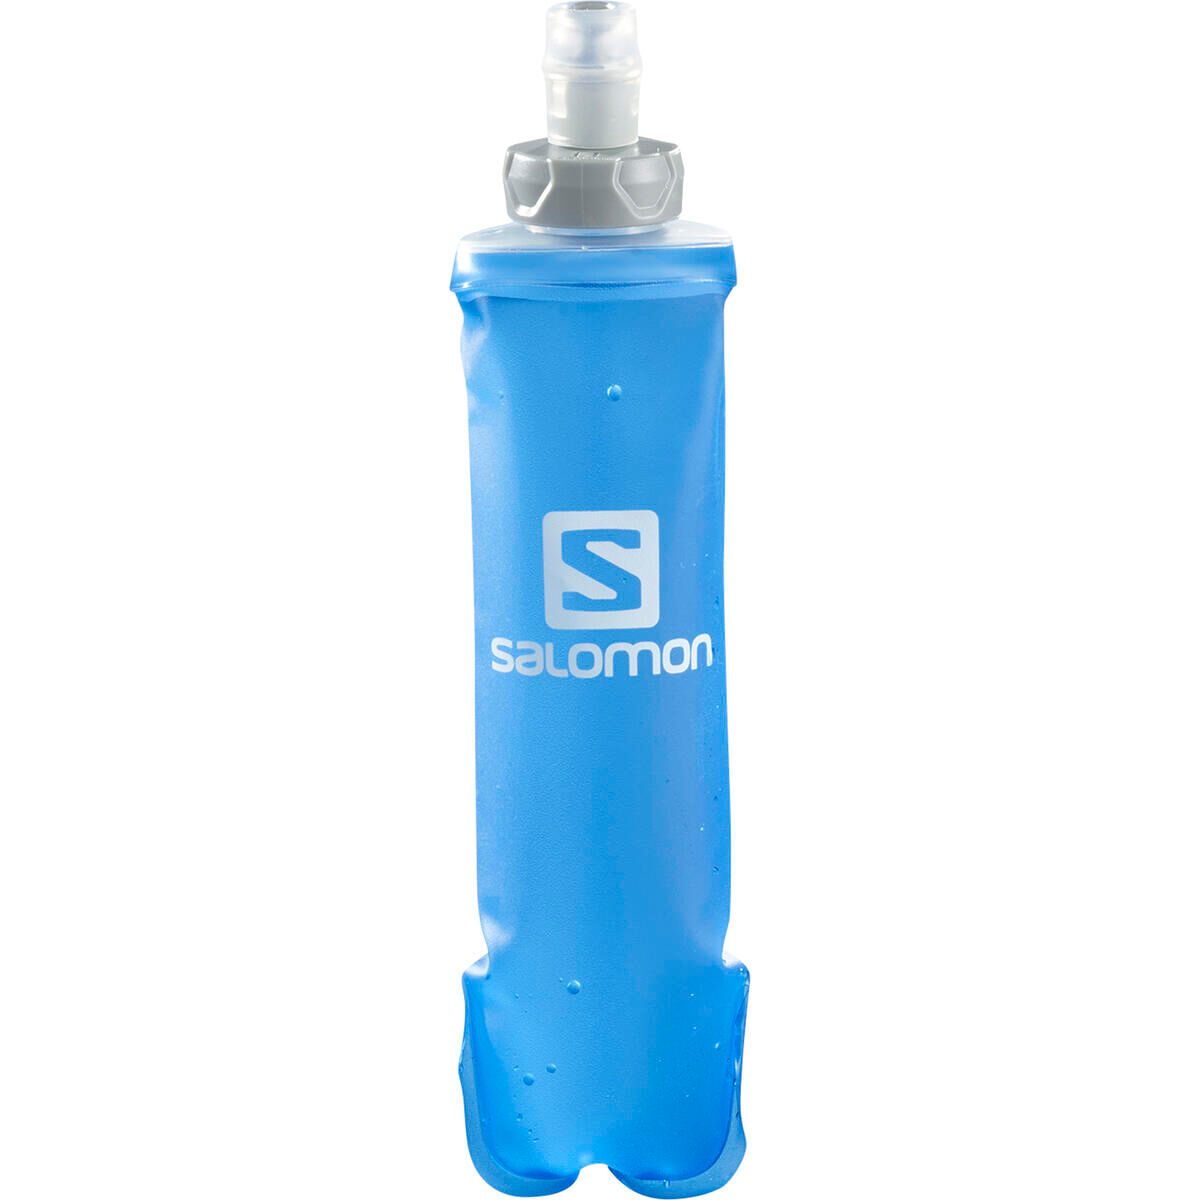 Salomon Soft Flask 250 ml - STD 28 - Water bottle